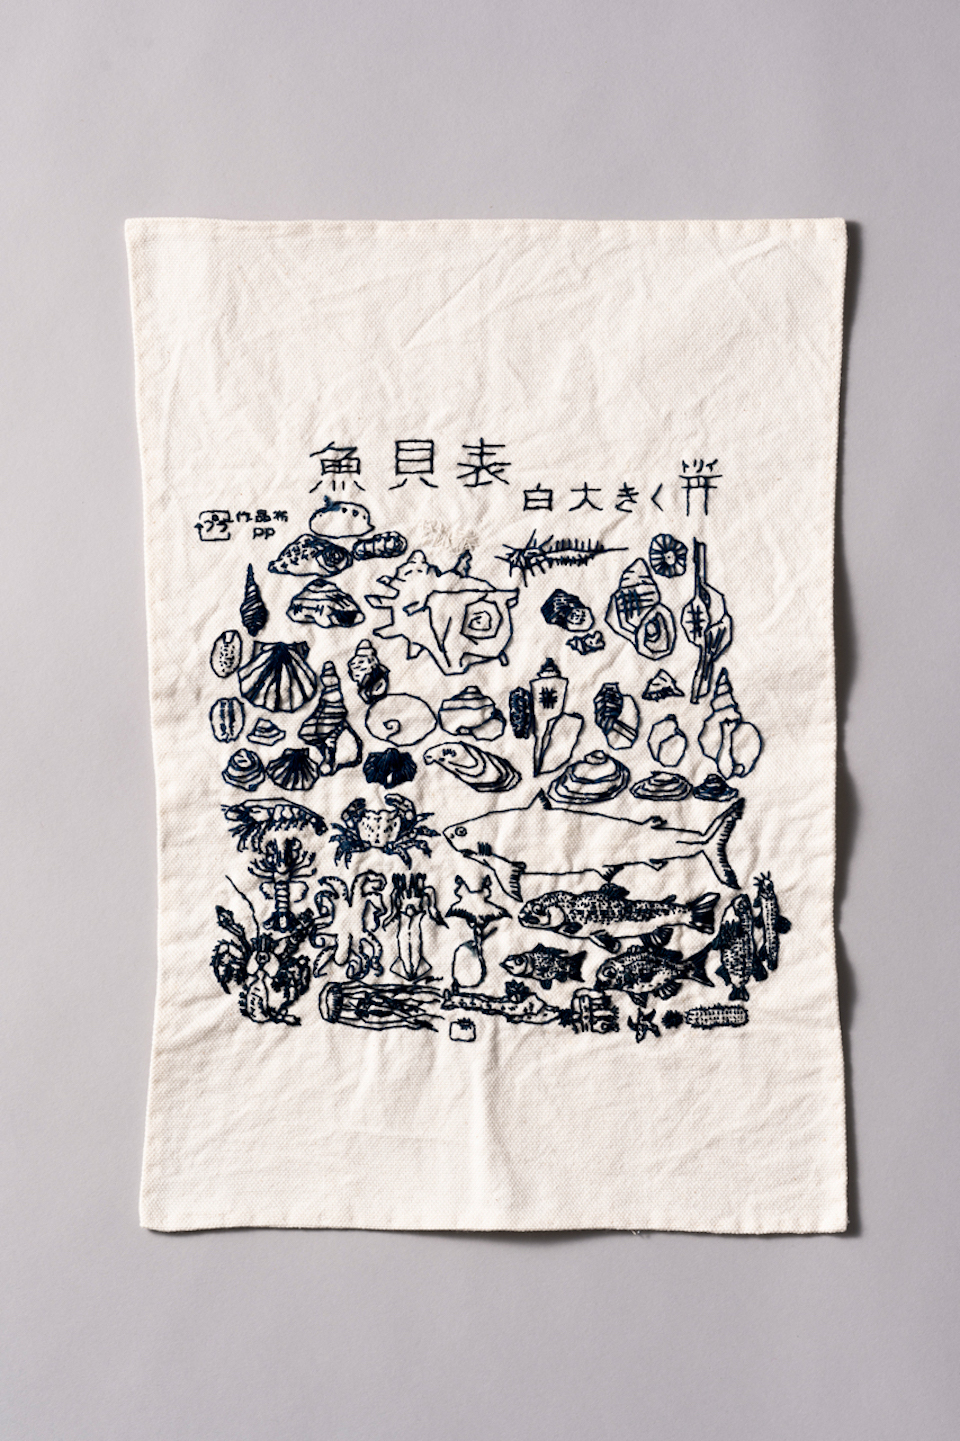 五十嵐朋之さんの作品画像。白い布に貝や魚が細かく刺繍で縫い付けられている。「貝魚表」という漢字が一番上方に塗ってある。